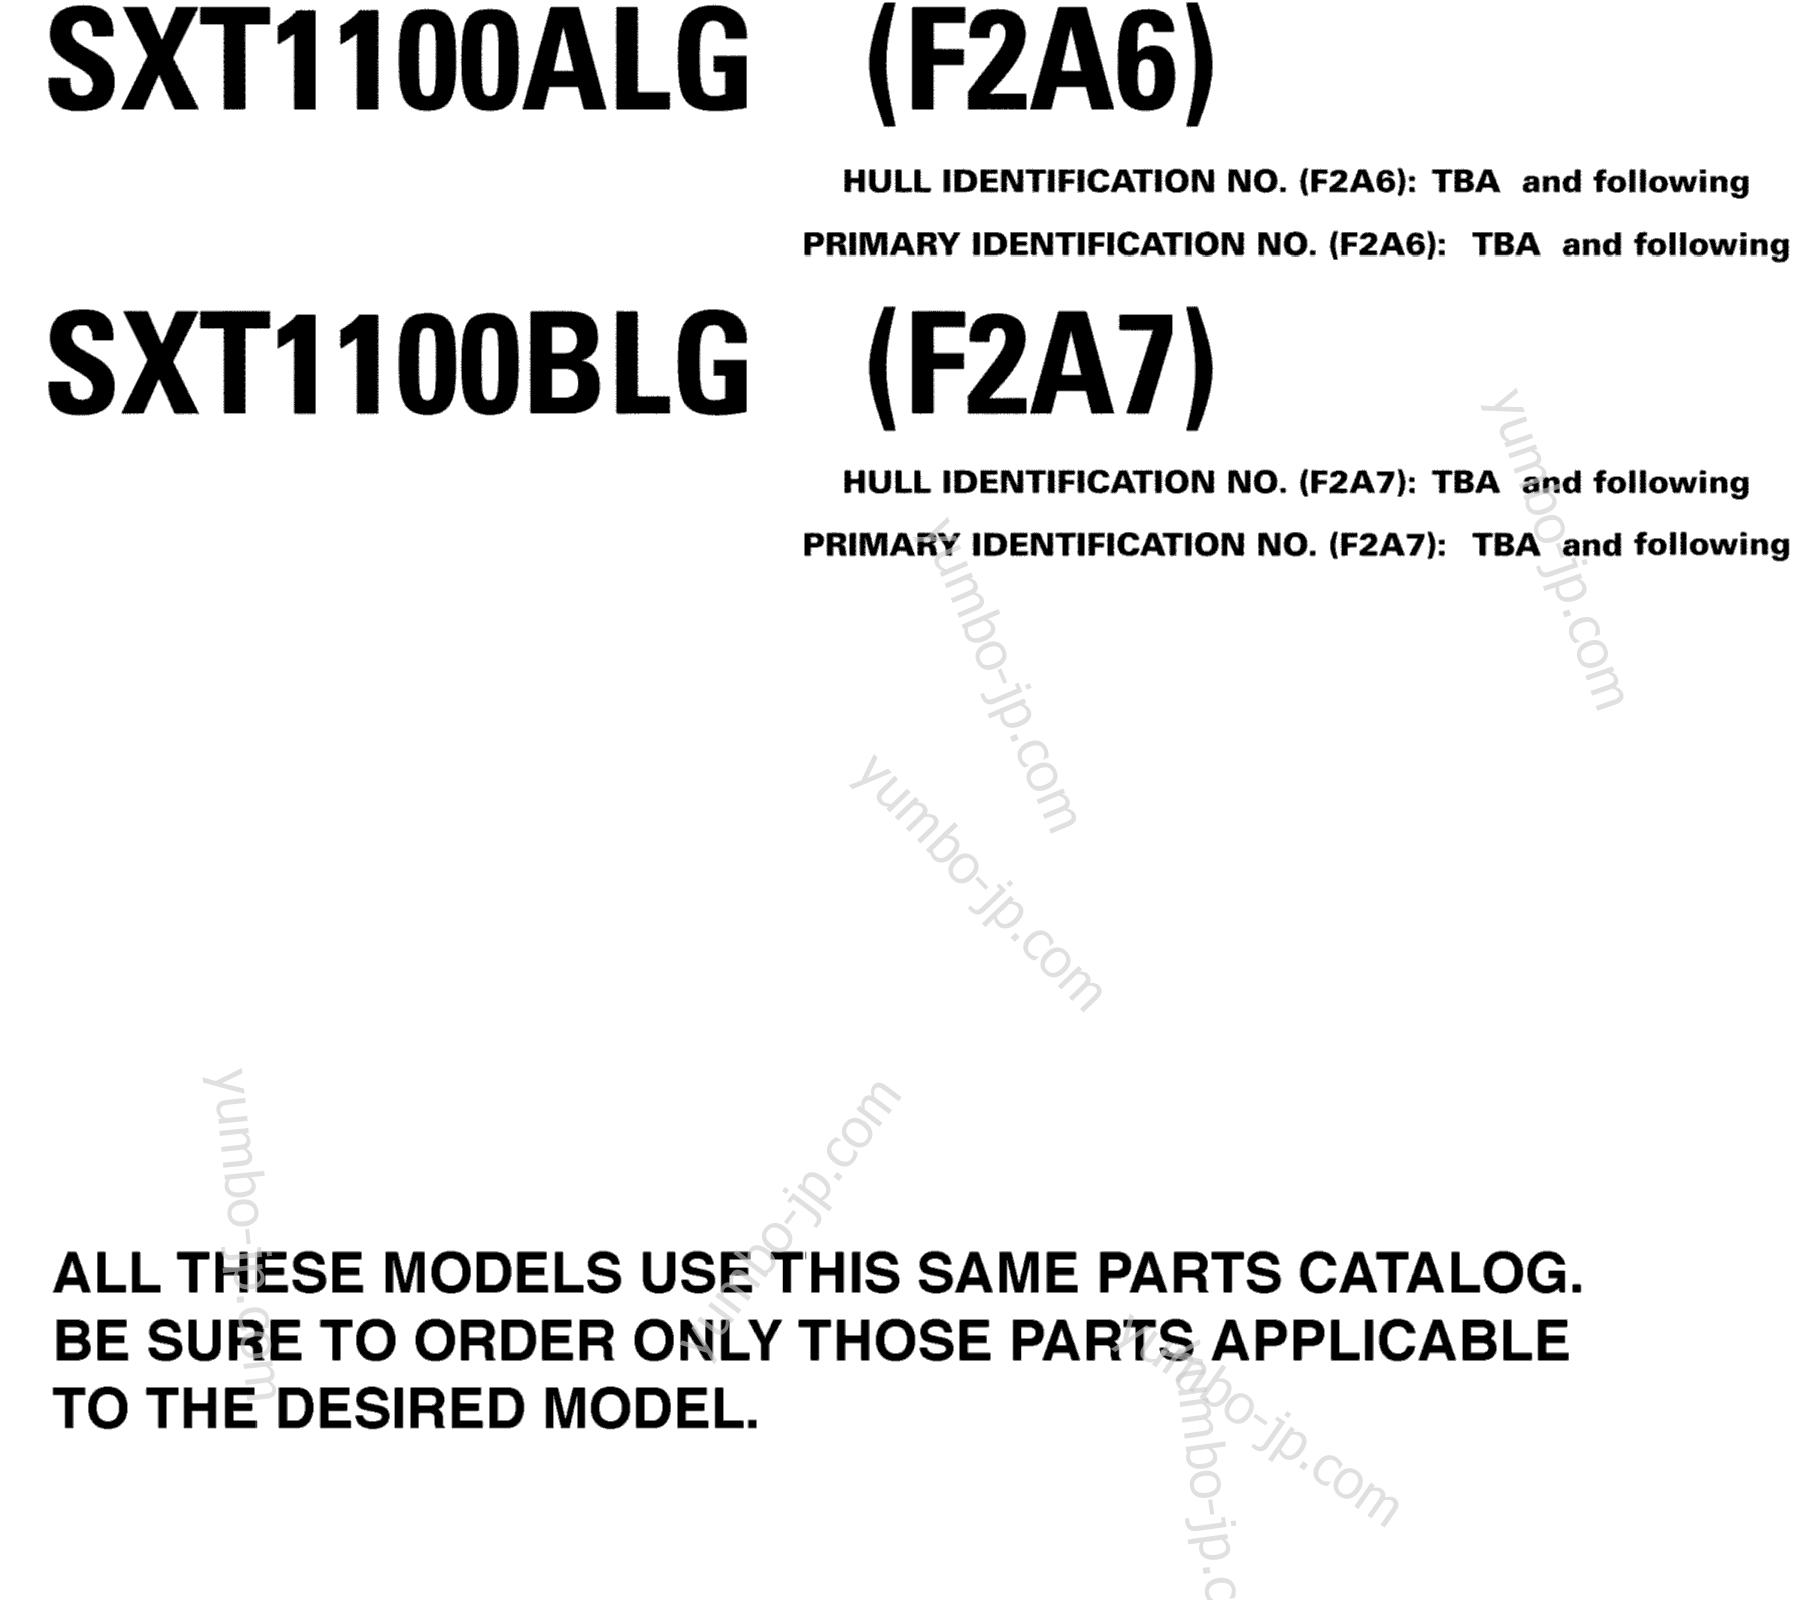 Models In This Catalog for boats YAMAHA AR230 HO CA & NY (SXT1100BLG) CA 2008 year